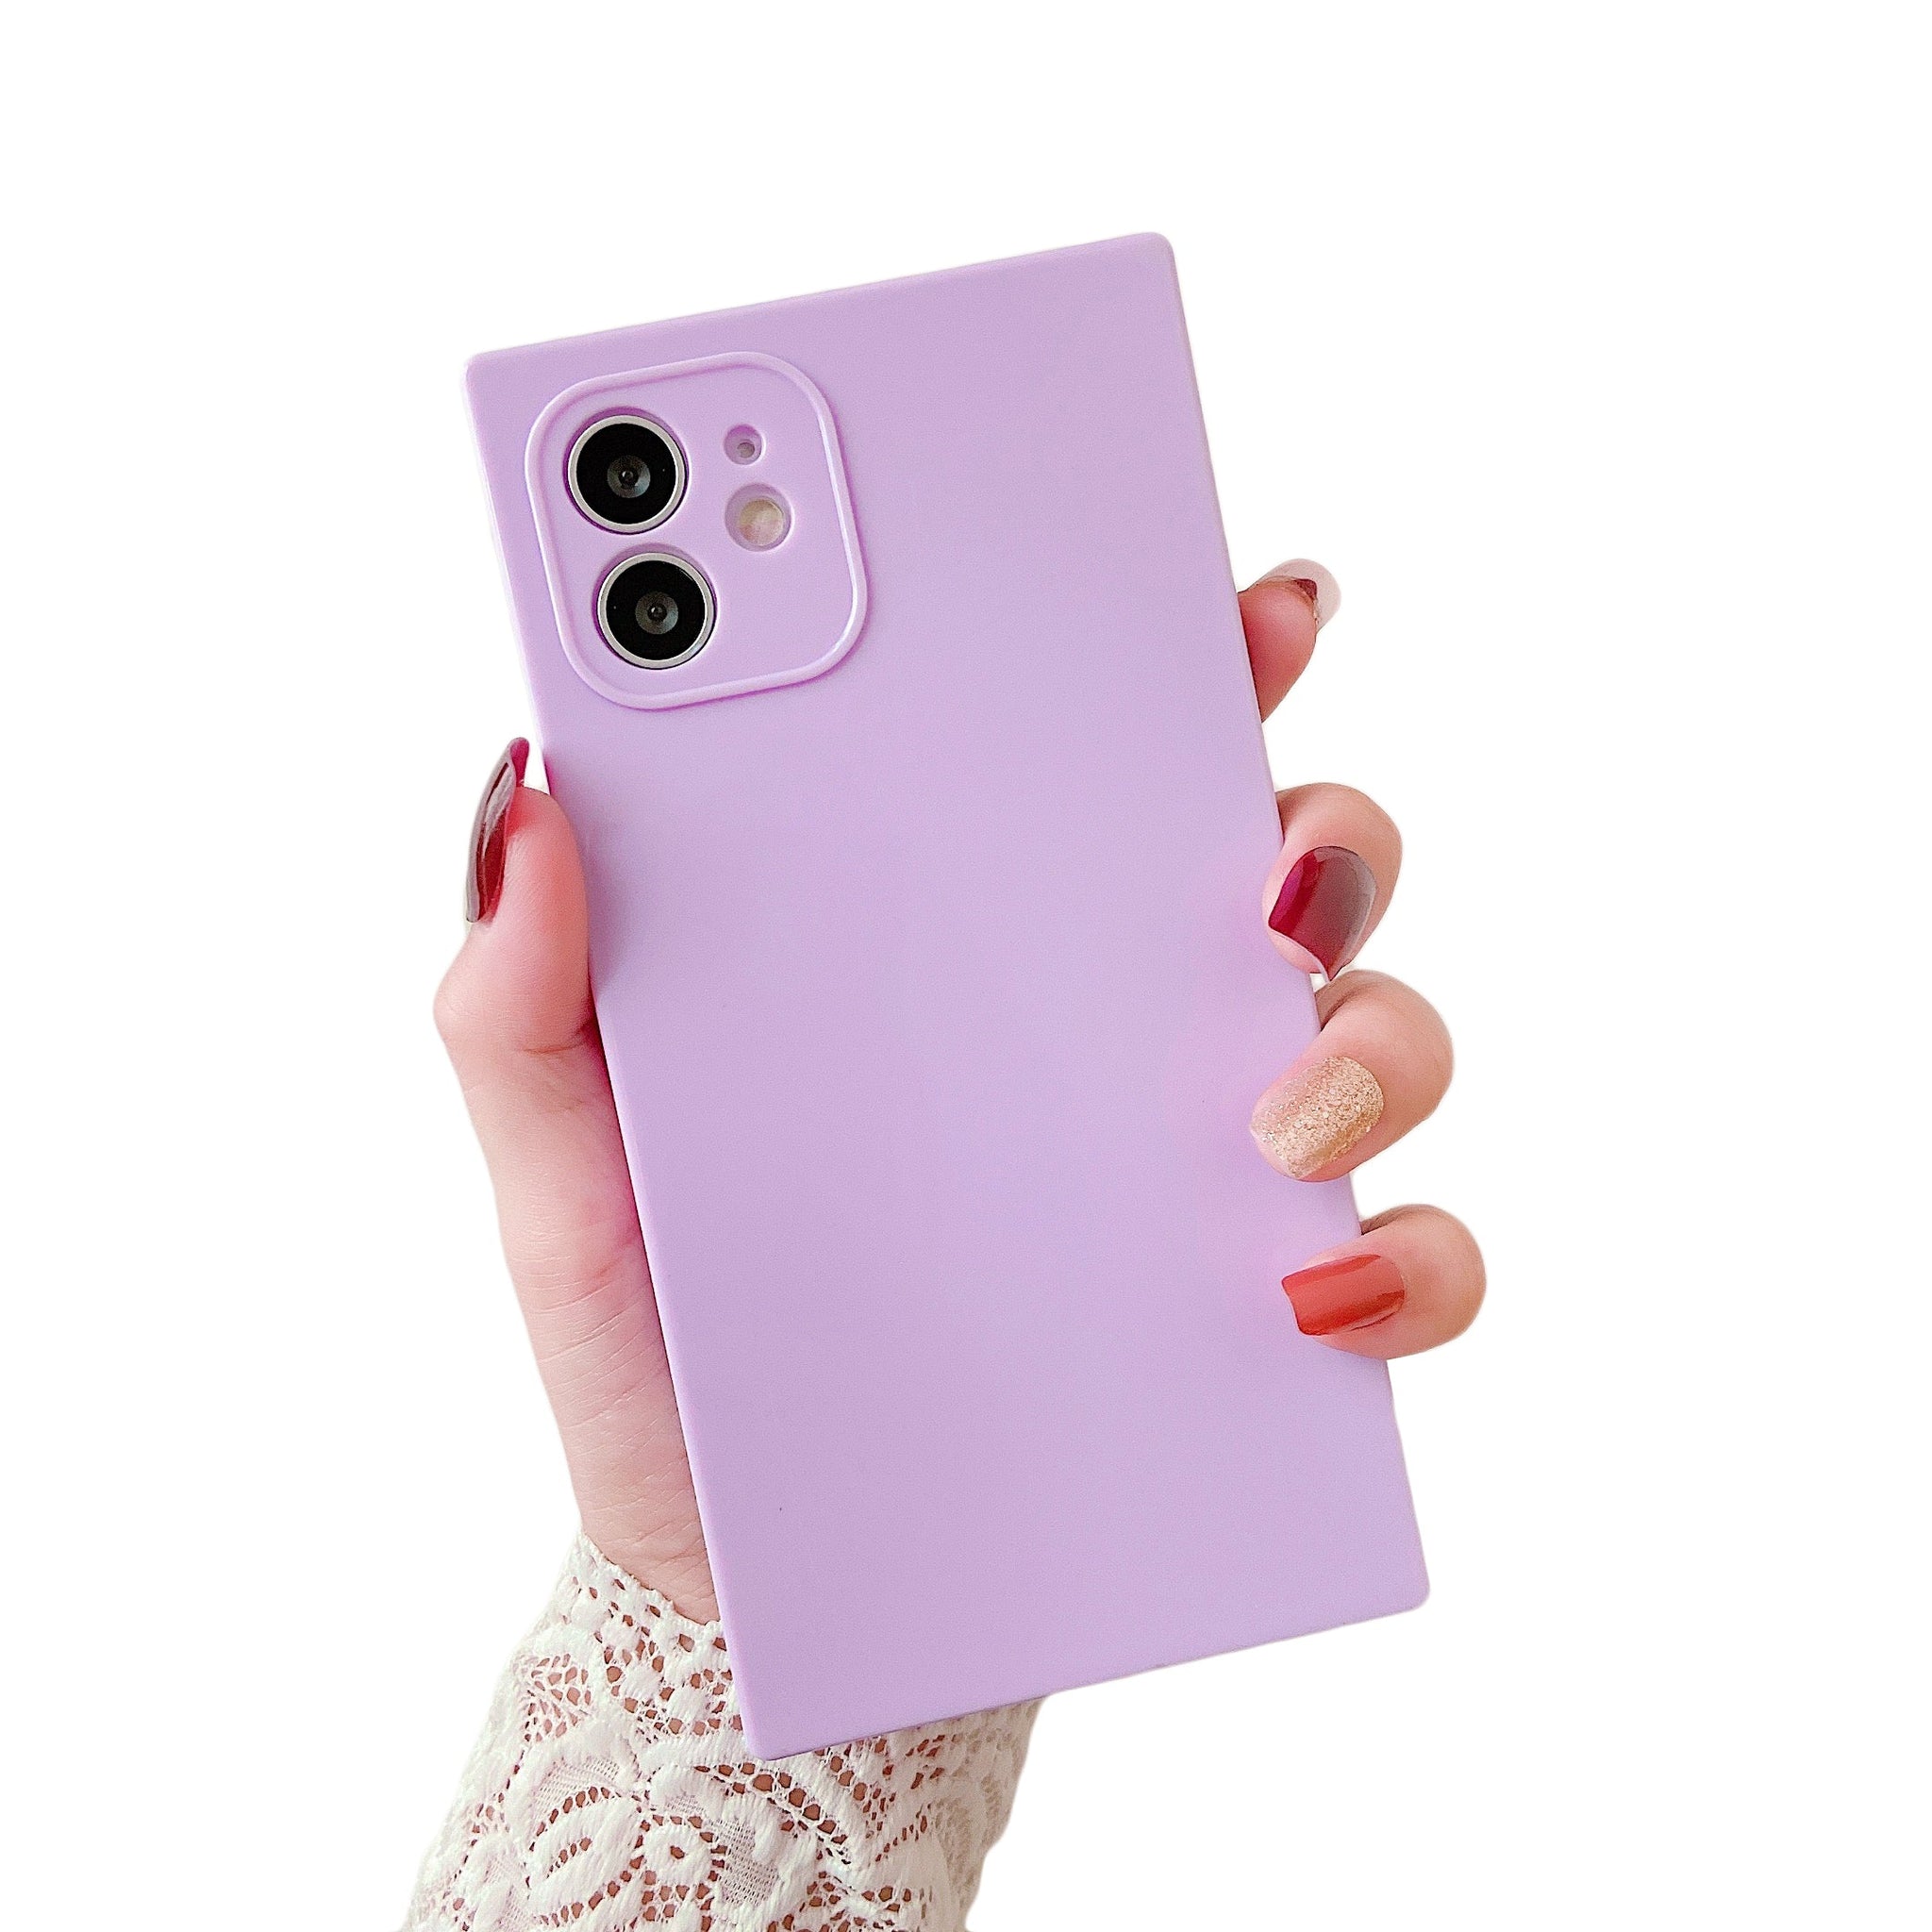 iPhone 11 Case Square Plain Color (Purple)